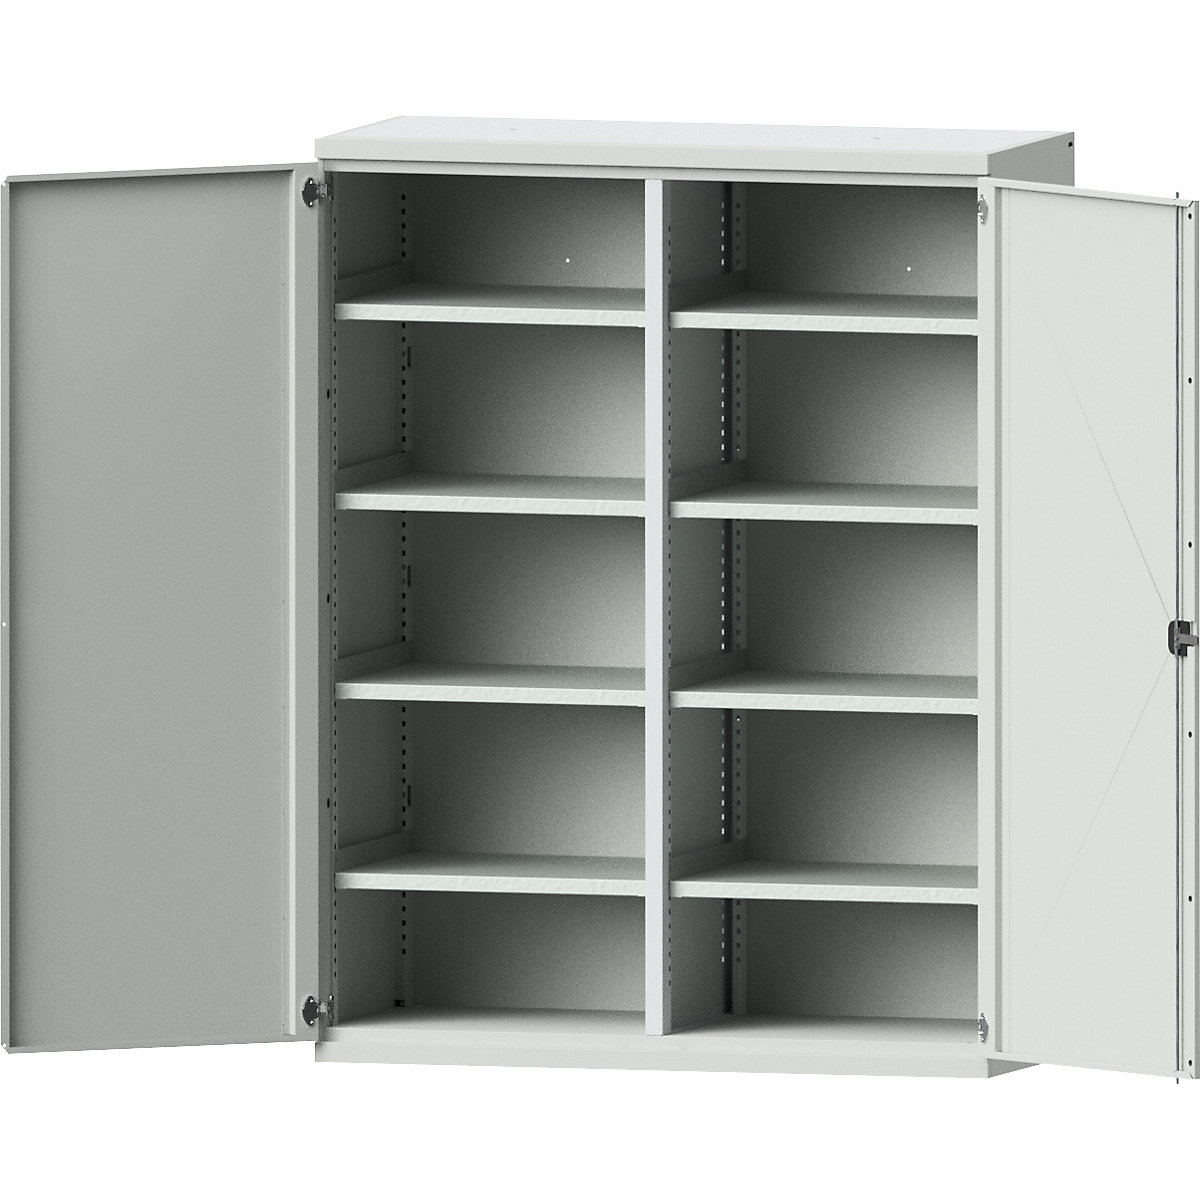 JUMBO heavy duty cupboard made of sheet steel - eurokraft pro